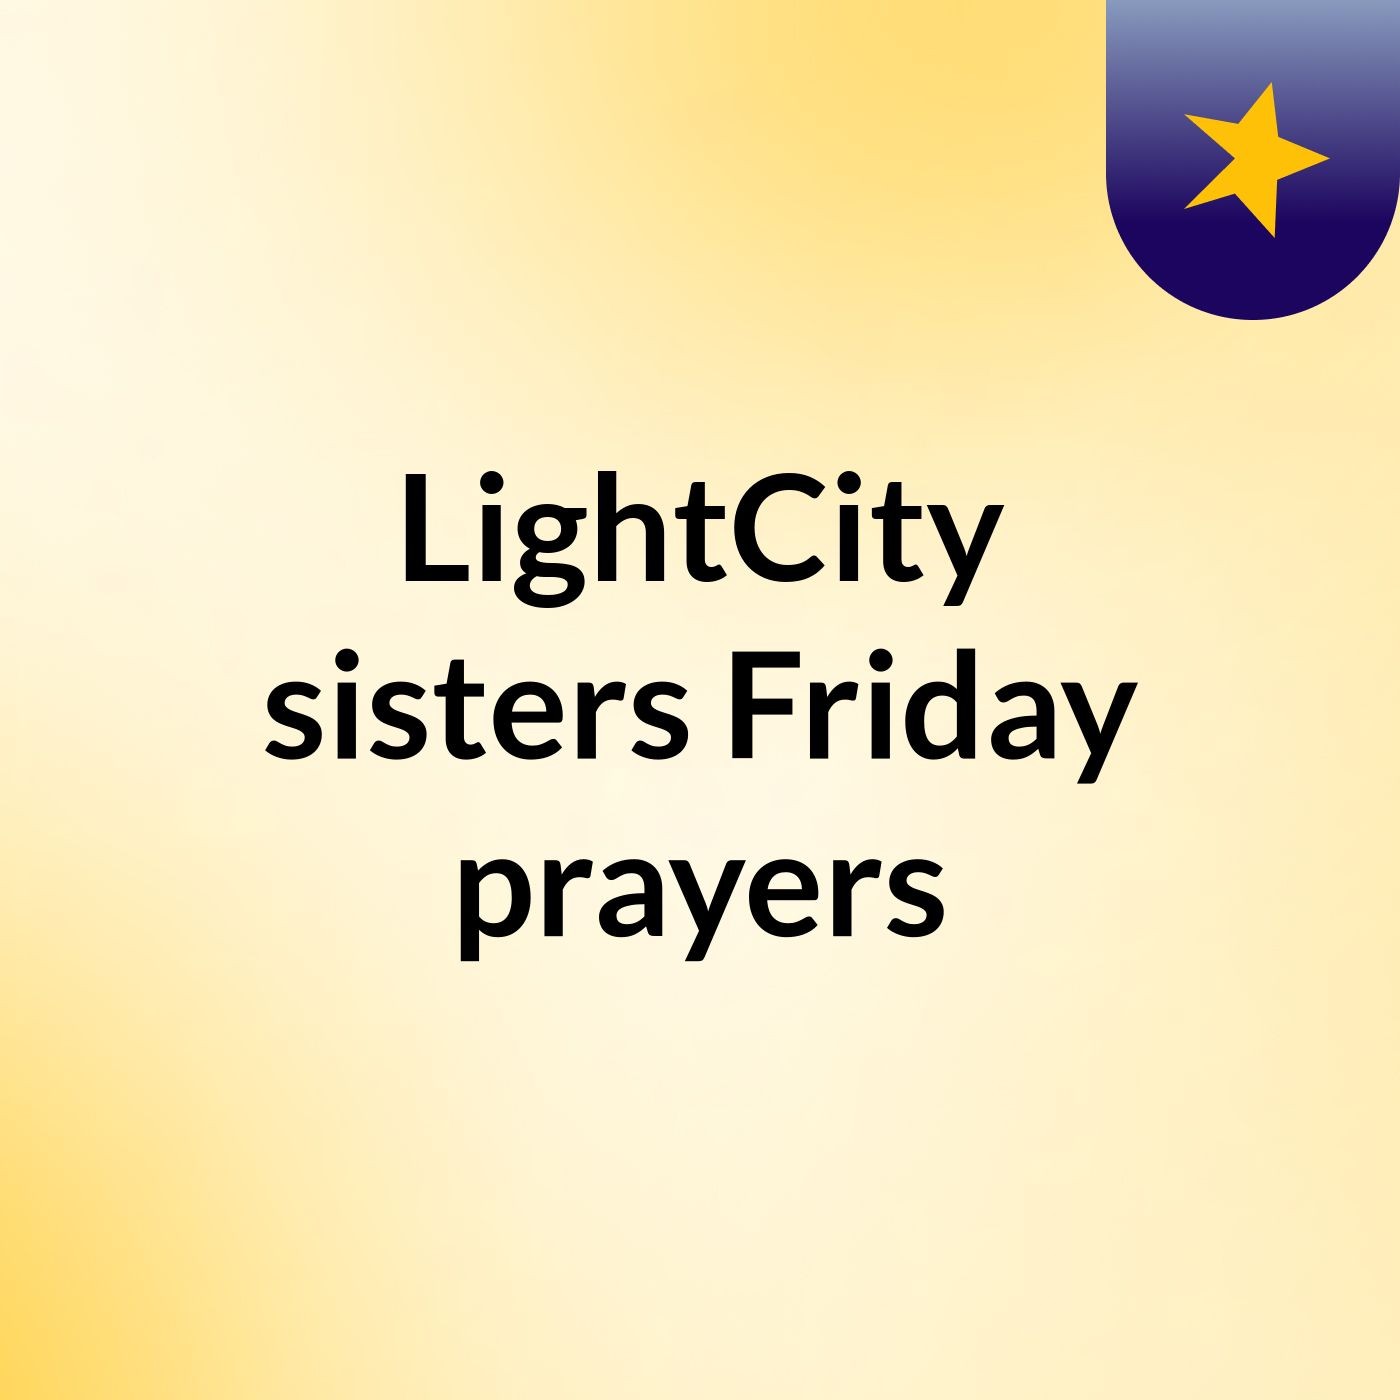 LightCity sisters Friday prayers